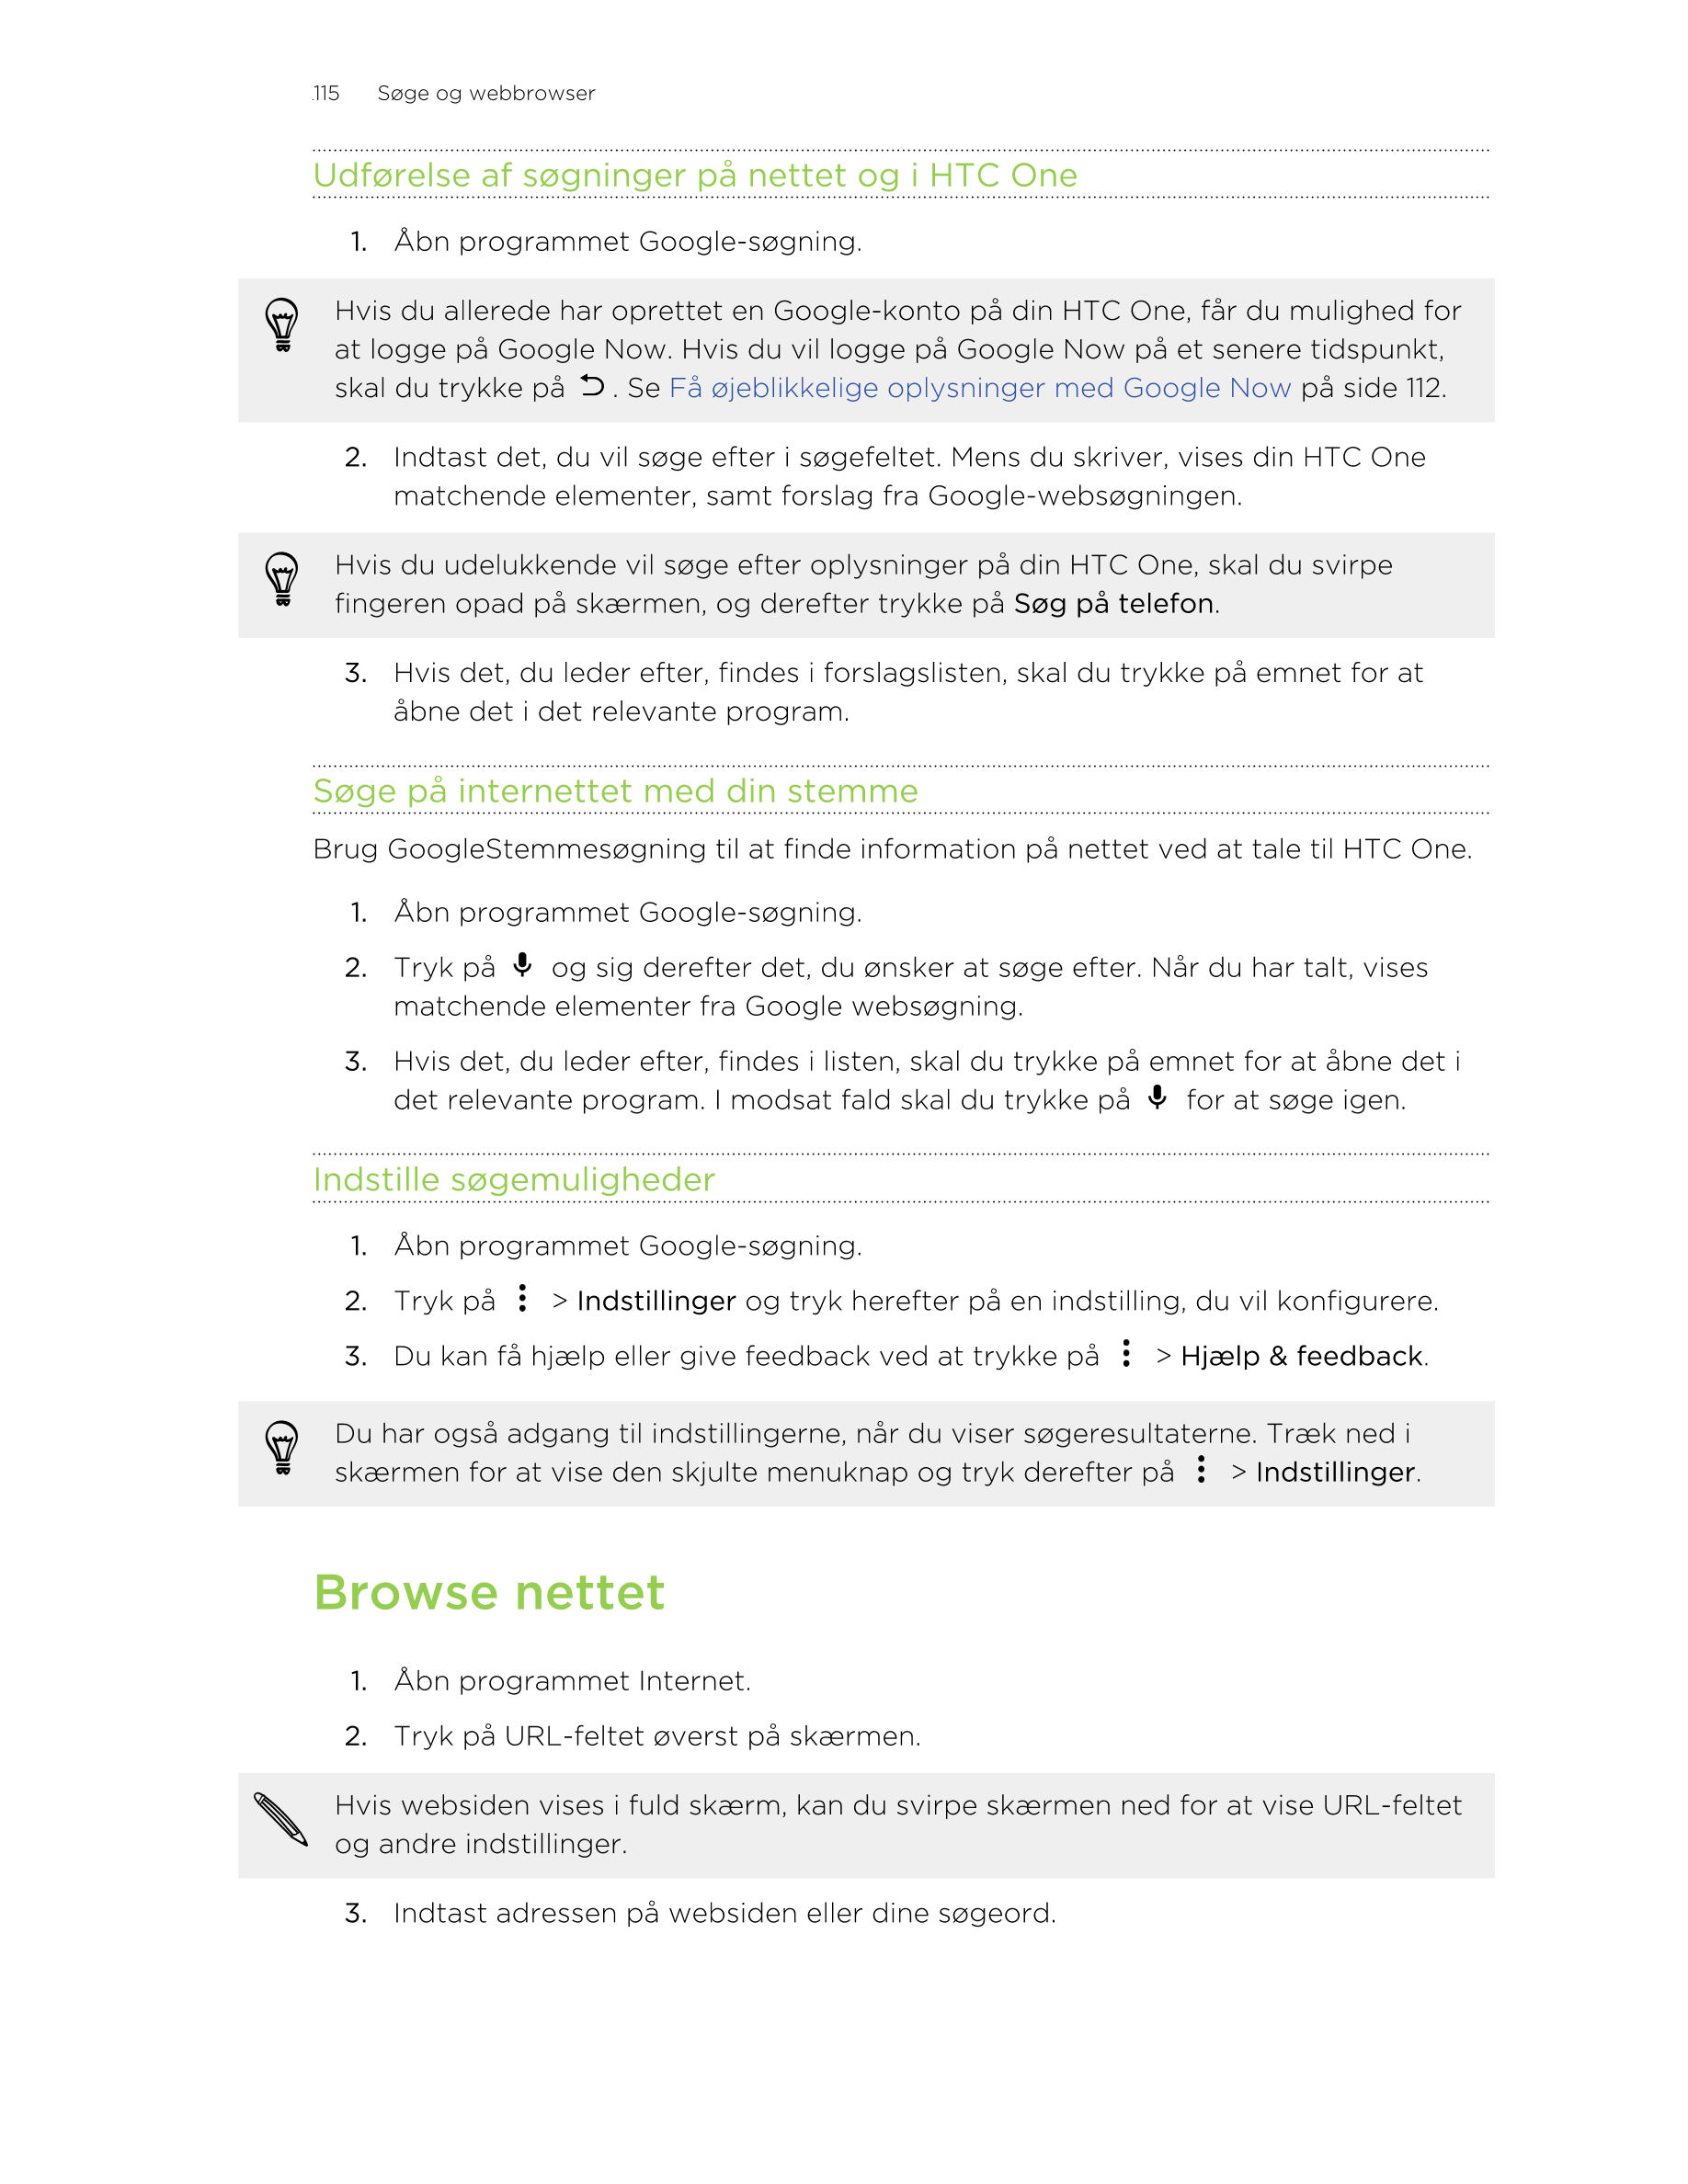 115     Søge og webbrowser
Udførelse af søgninger på nettet og i HTC One
1. Åbn programmet Google-søgning. 
Hvis du allerede har